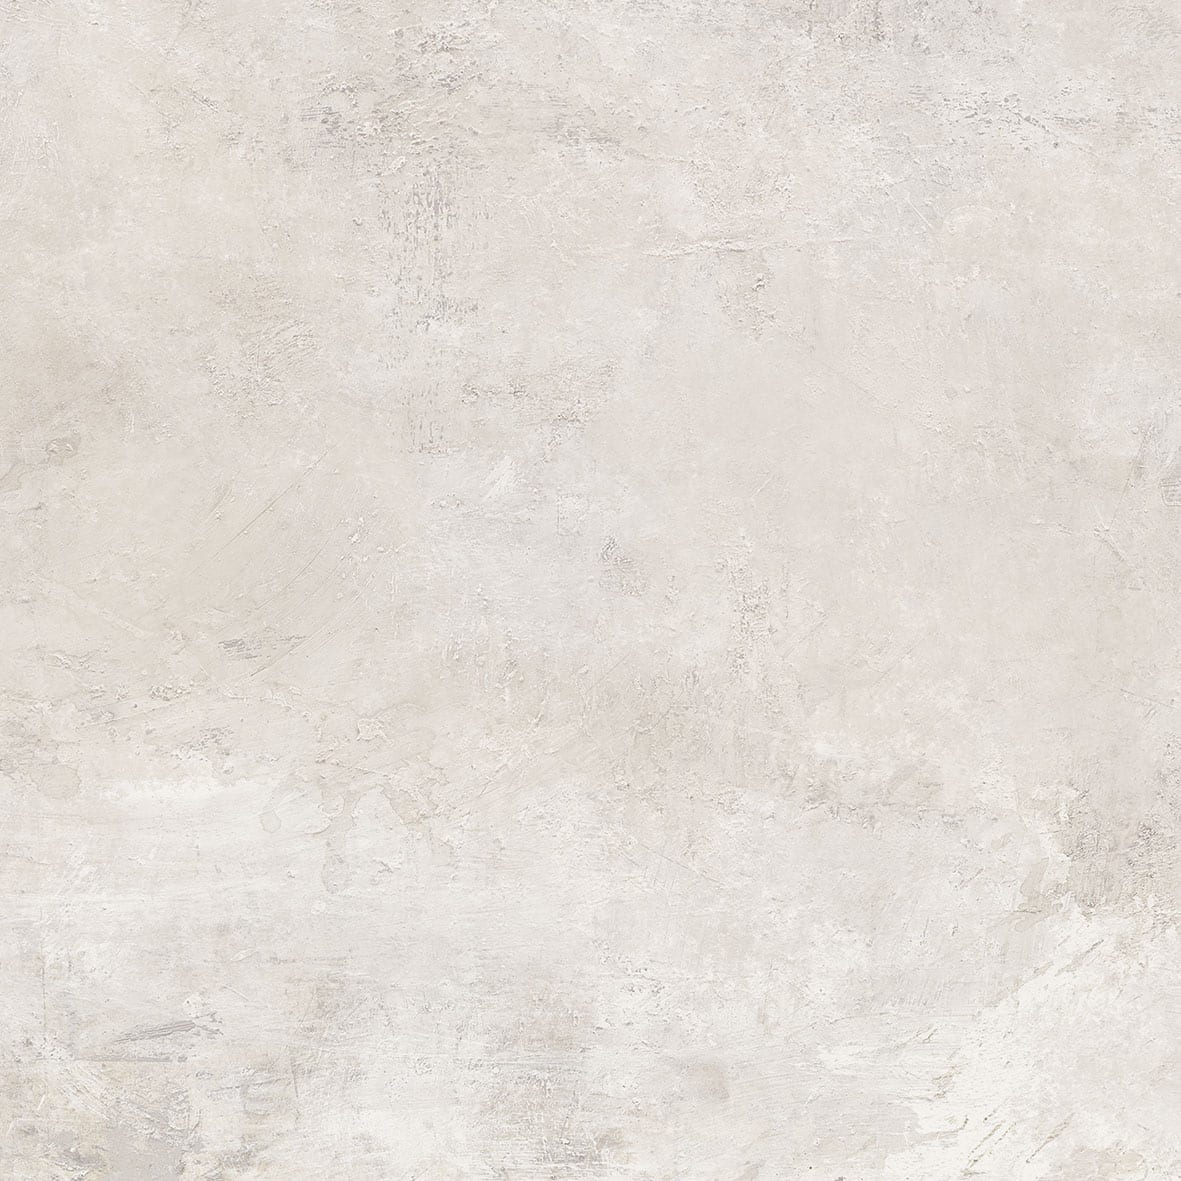 Gresie portelanata, 59 × 59 cm, bej, Colosseum, Cesarom